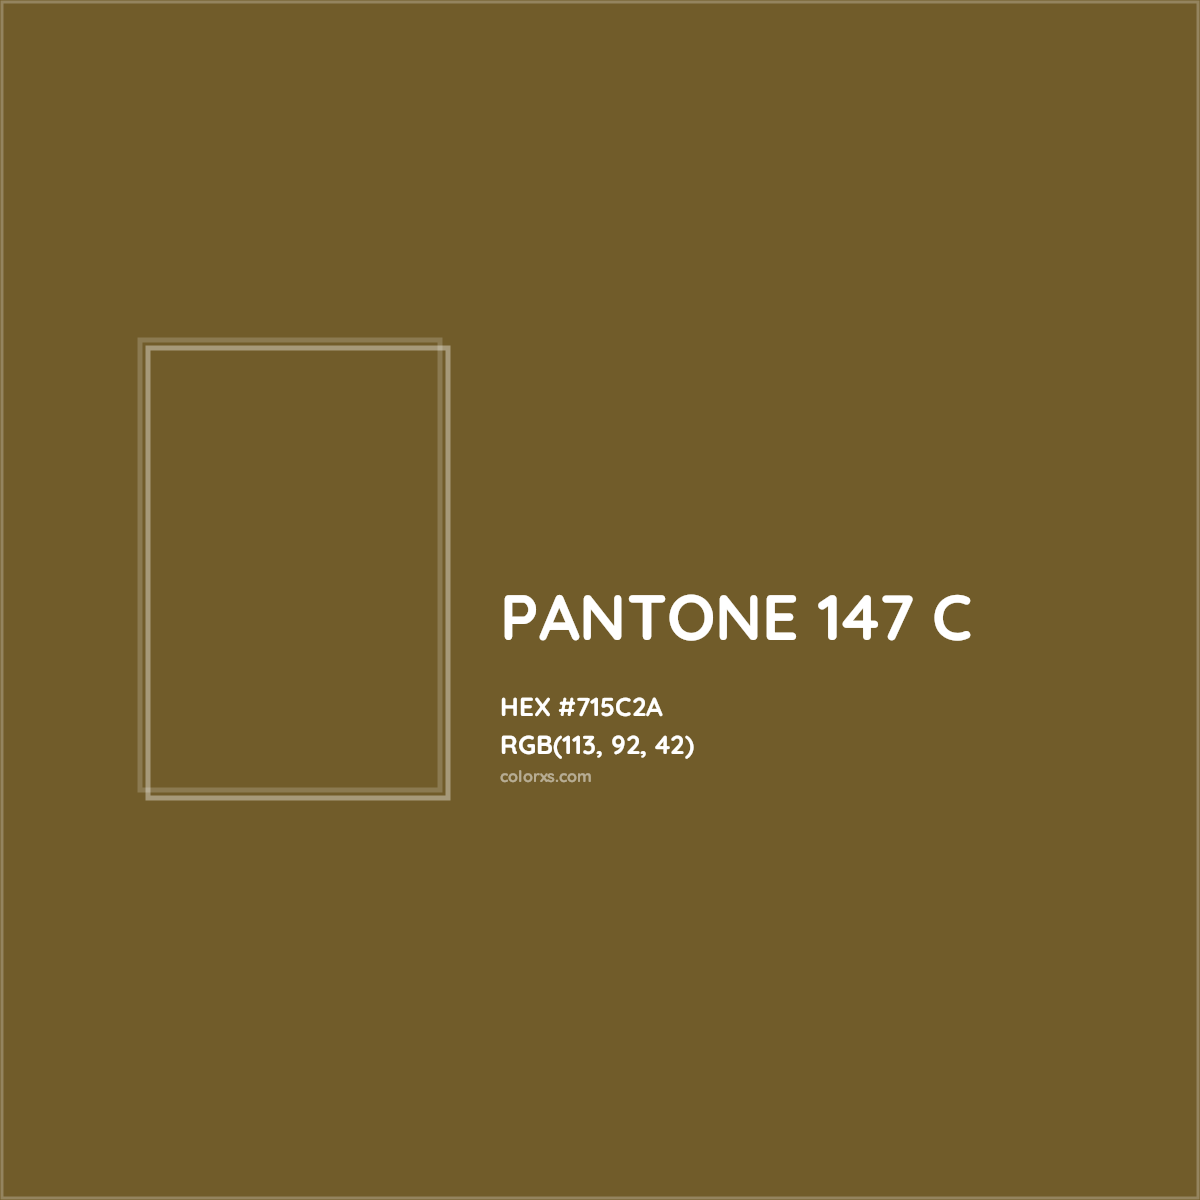 HEX #715C2A PANTONE 147 C CMS Pantone PMS - Color Code